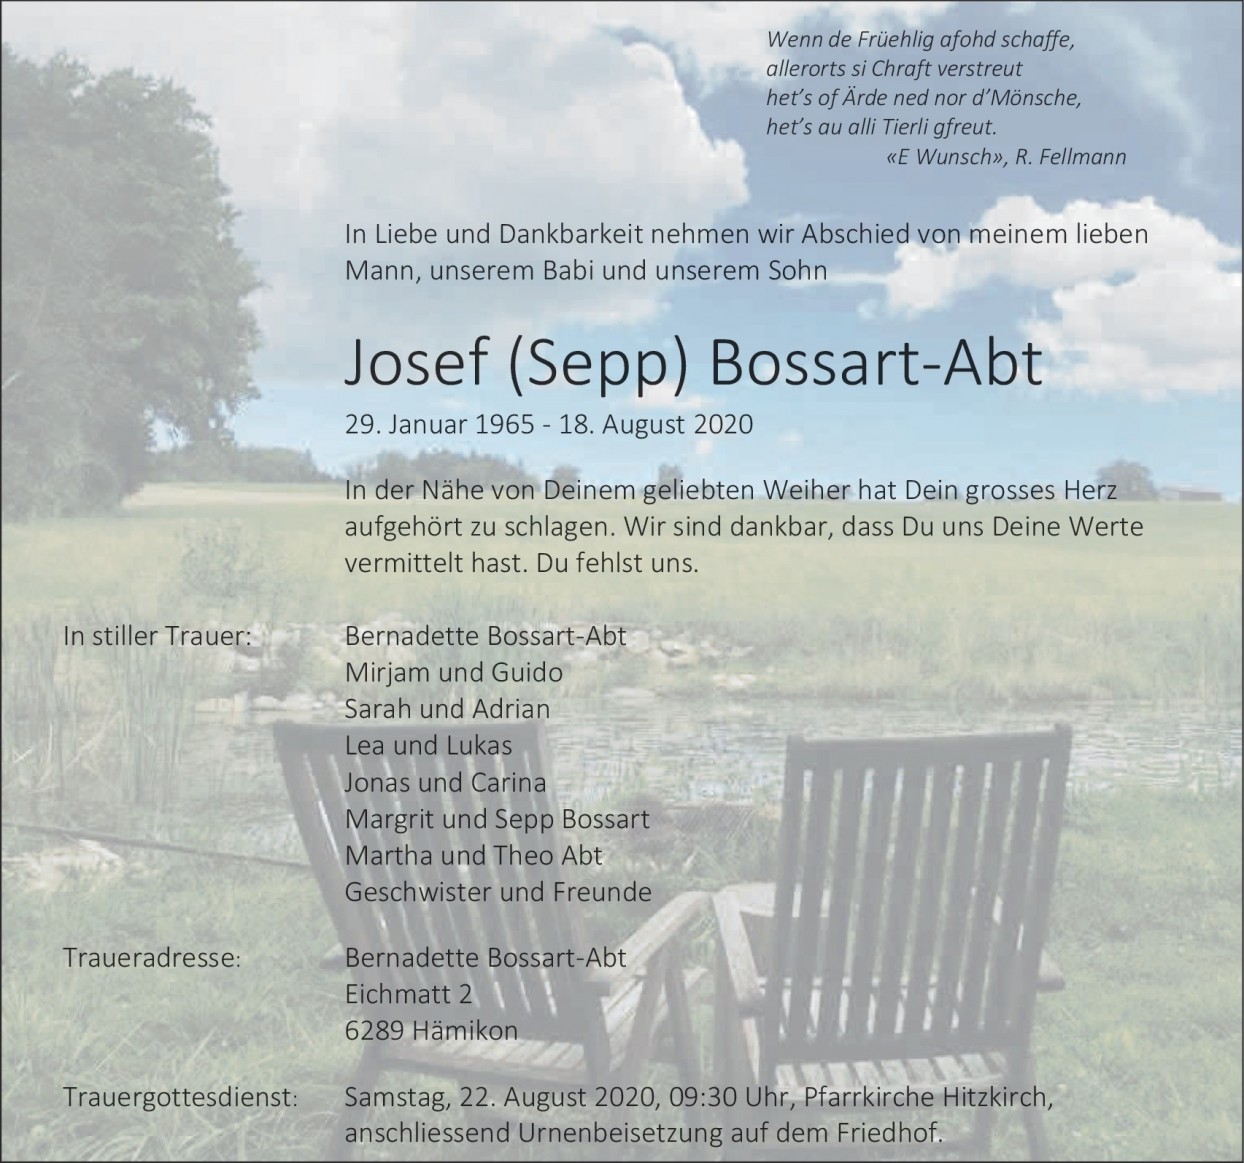 Josef Bossart-Abt